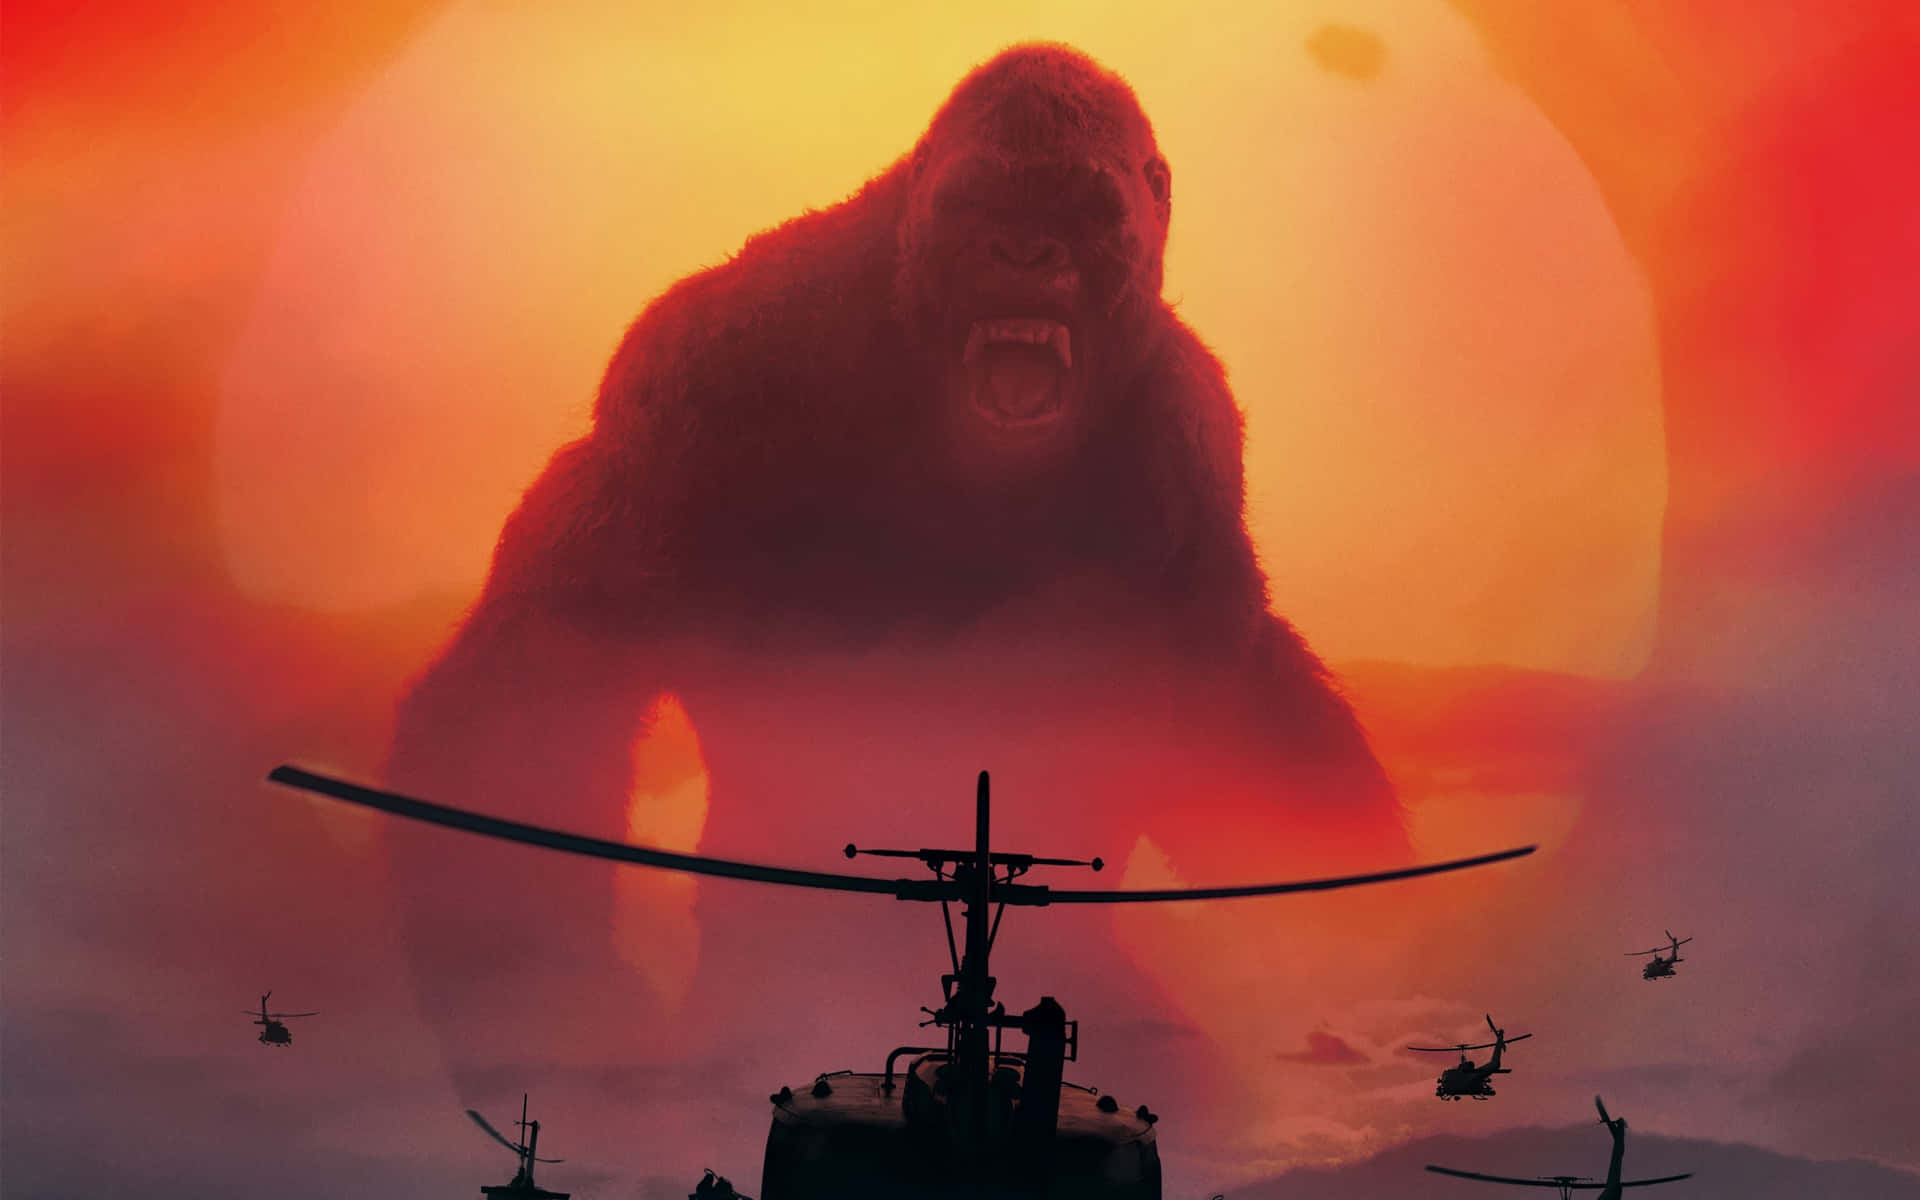 Følg med på en episk rejse med King Kong i 4k-opløsning. Wallpaper